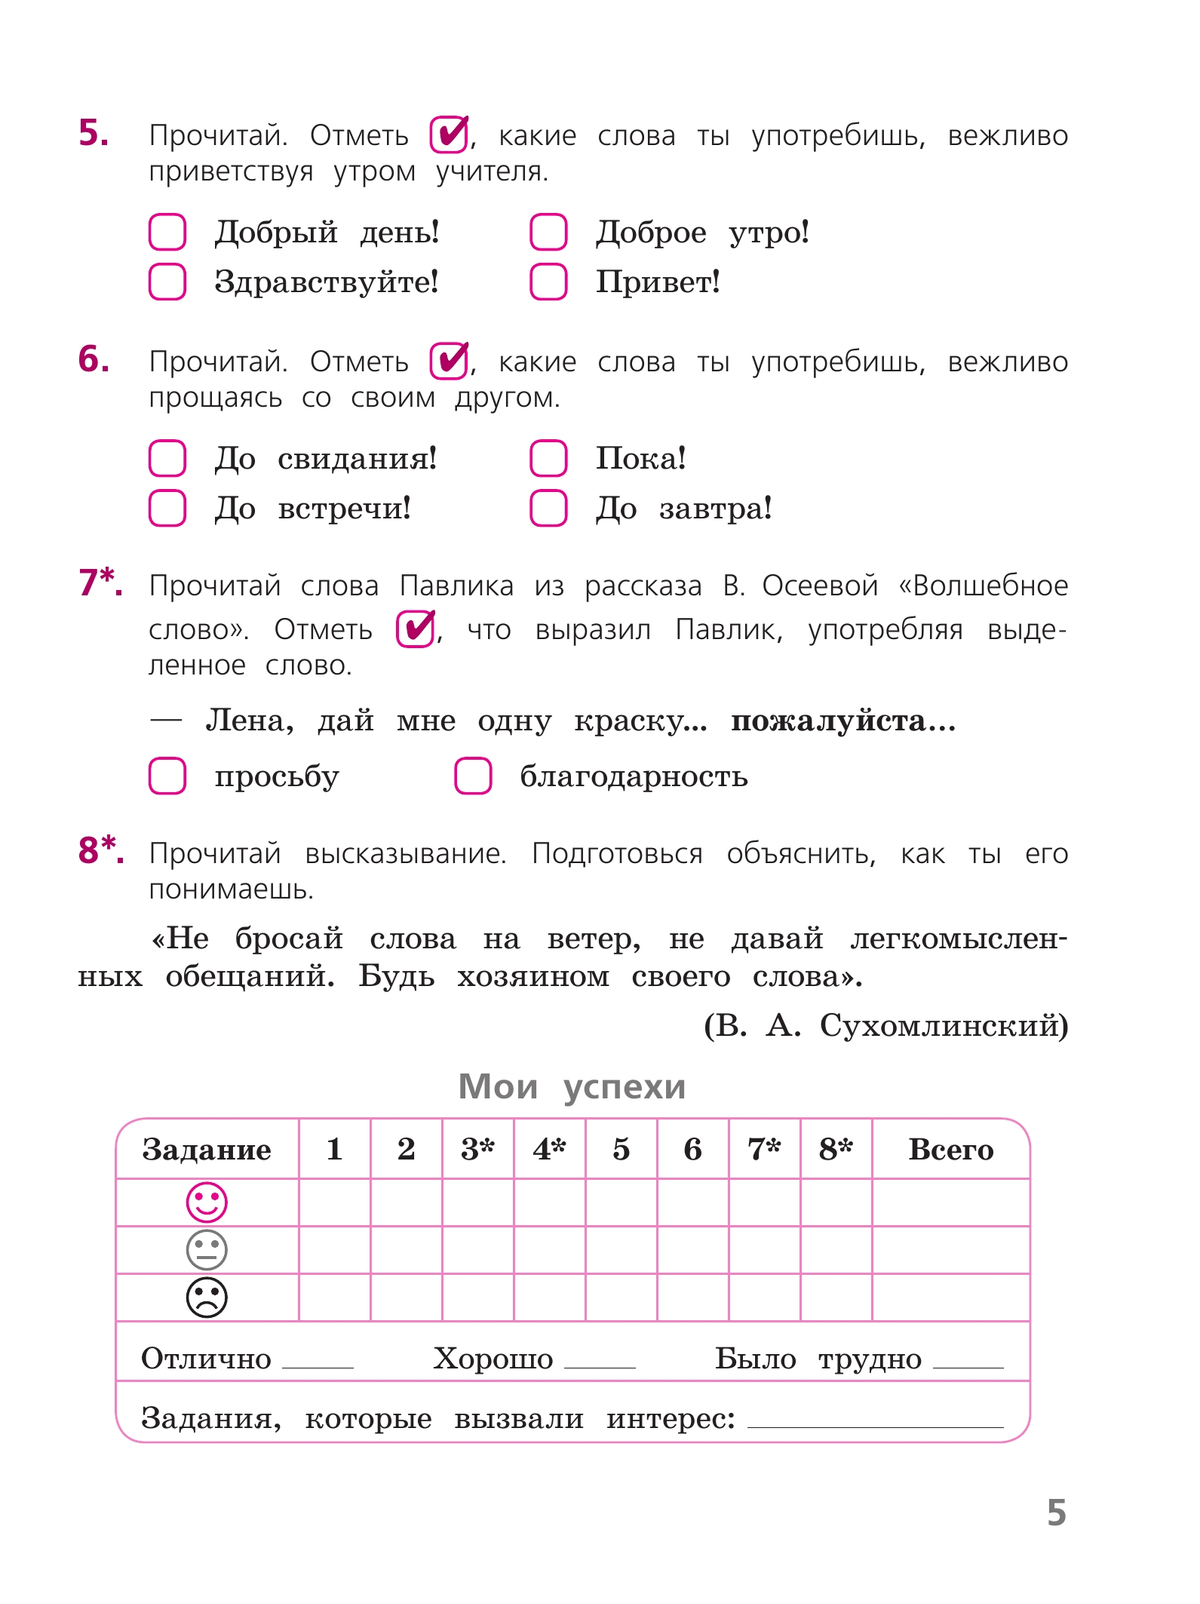 Русский язык. Тетрадь учебных достижений. 3 класс 5